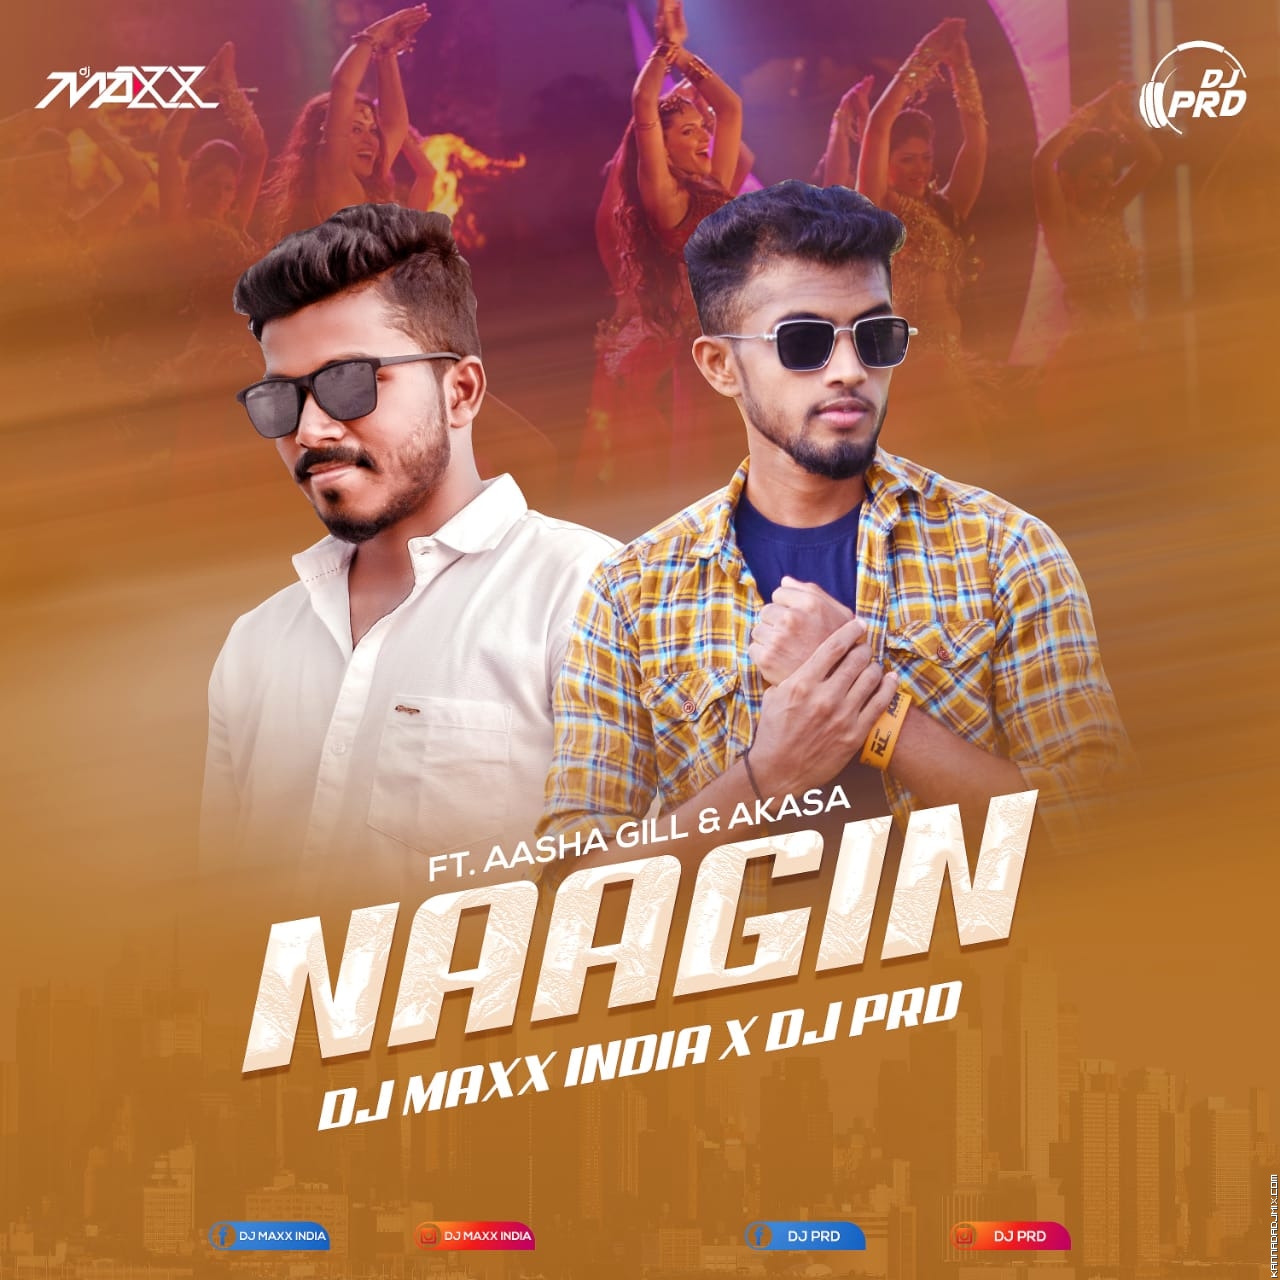 NAAGIN (REMIX) DJ MAXX INDIA X DJ PRD.mp3